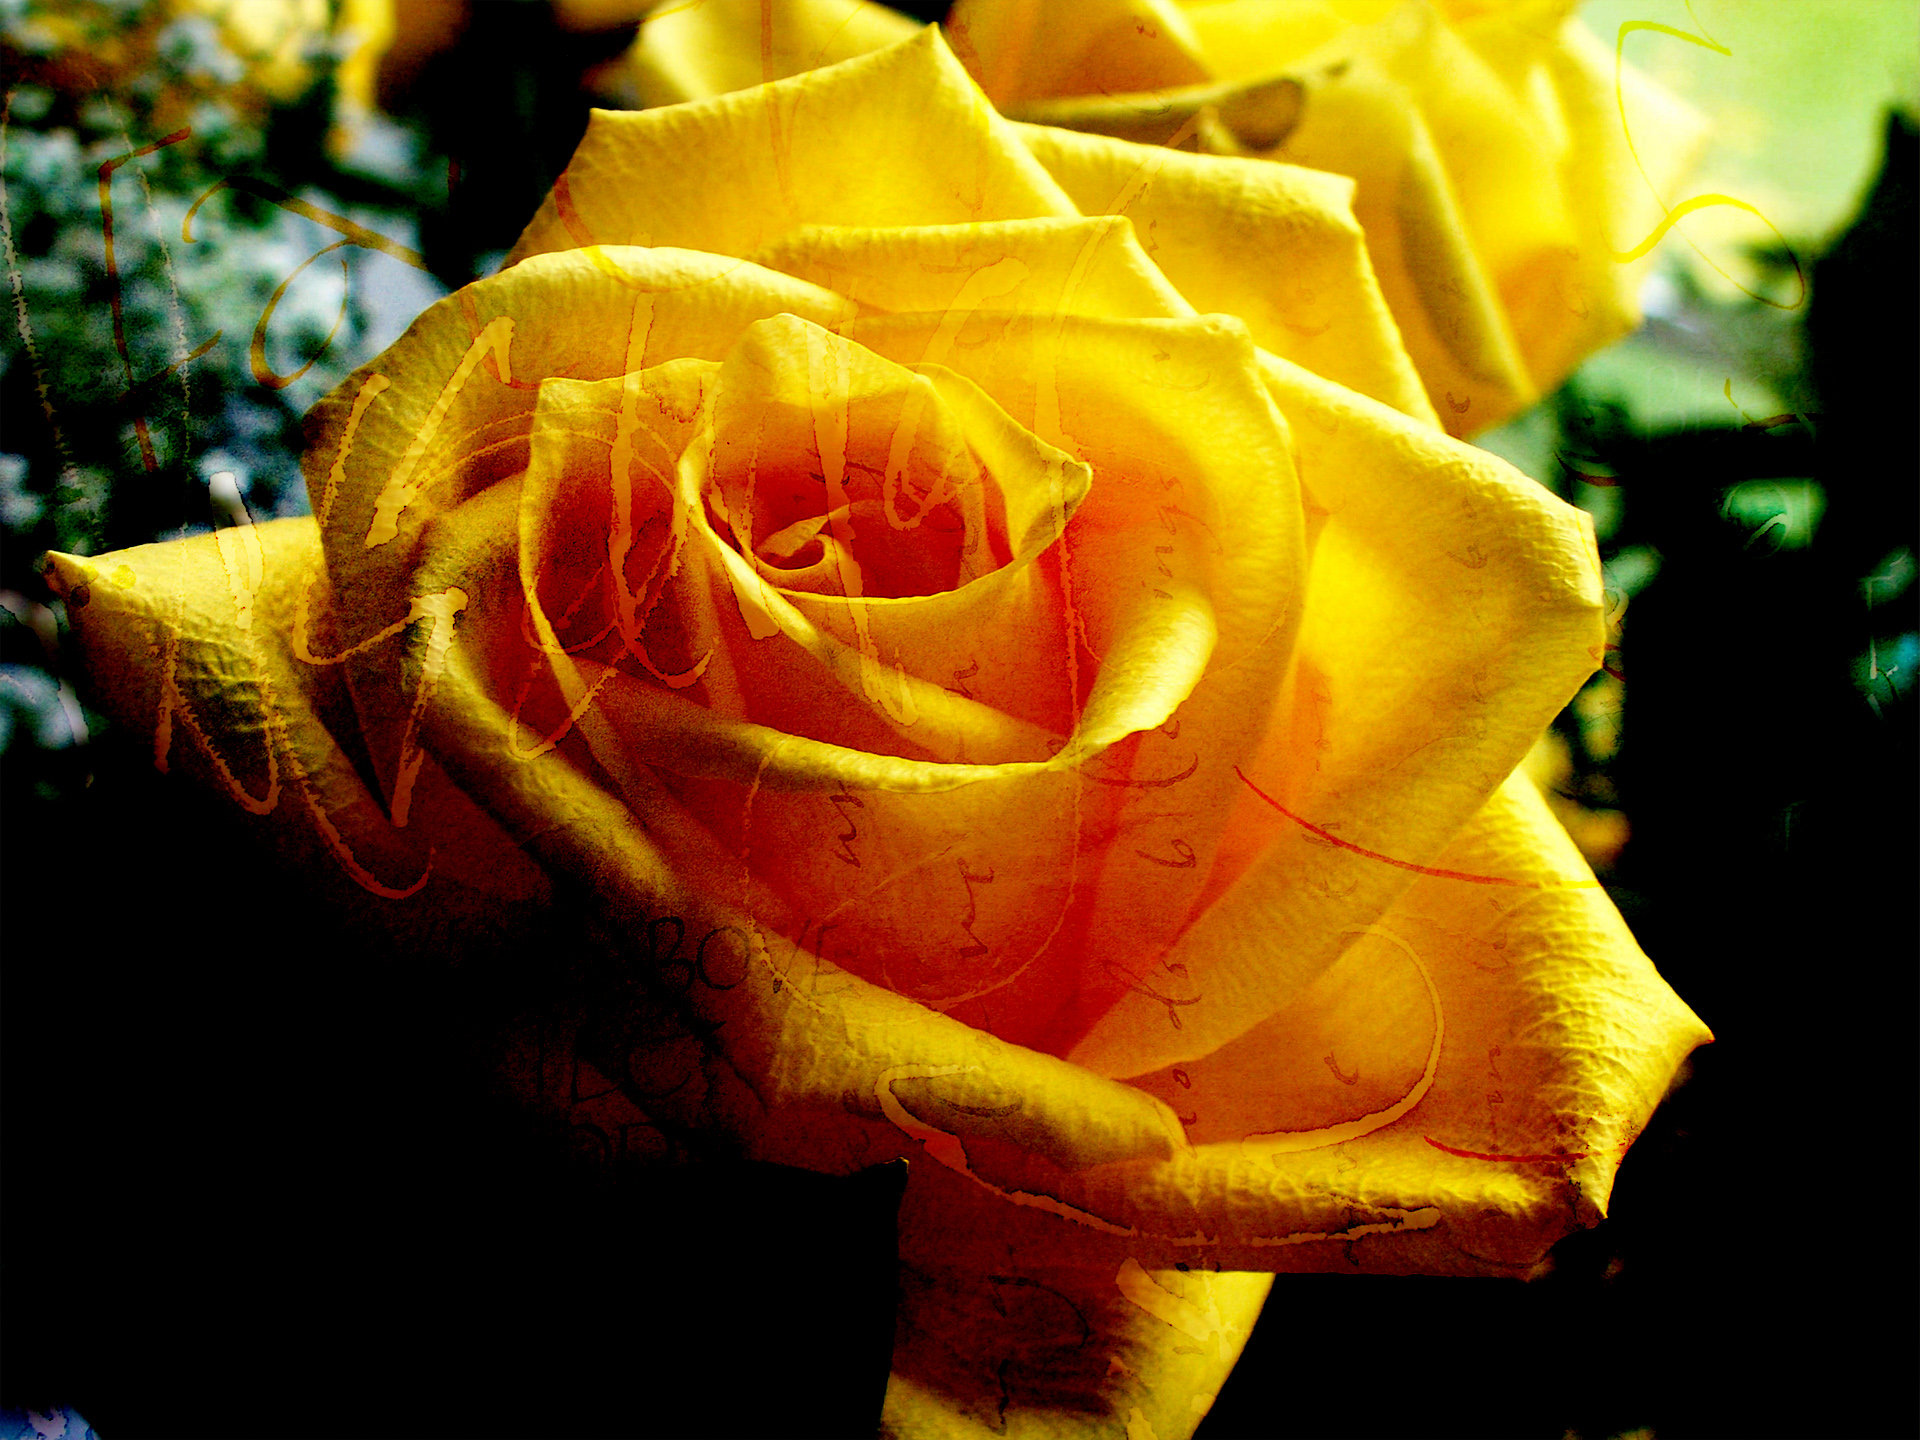 [77+] Free Yellow Rose Wallpaper | WallpaperSafari.com